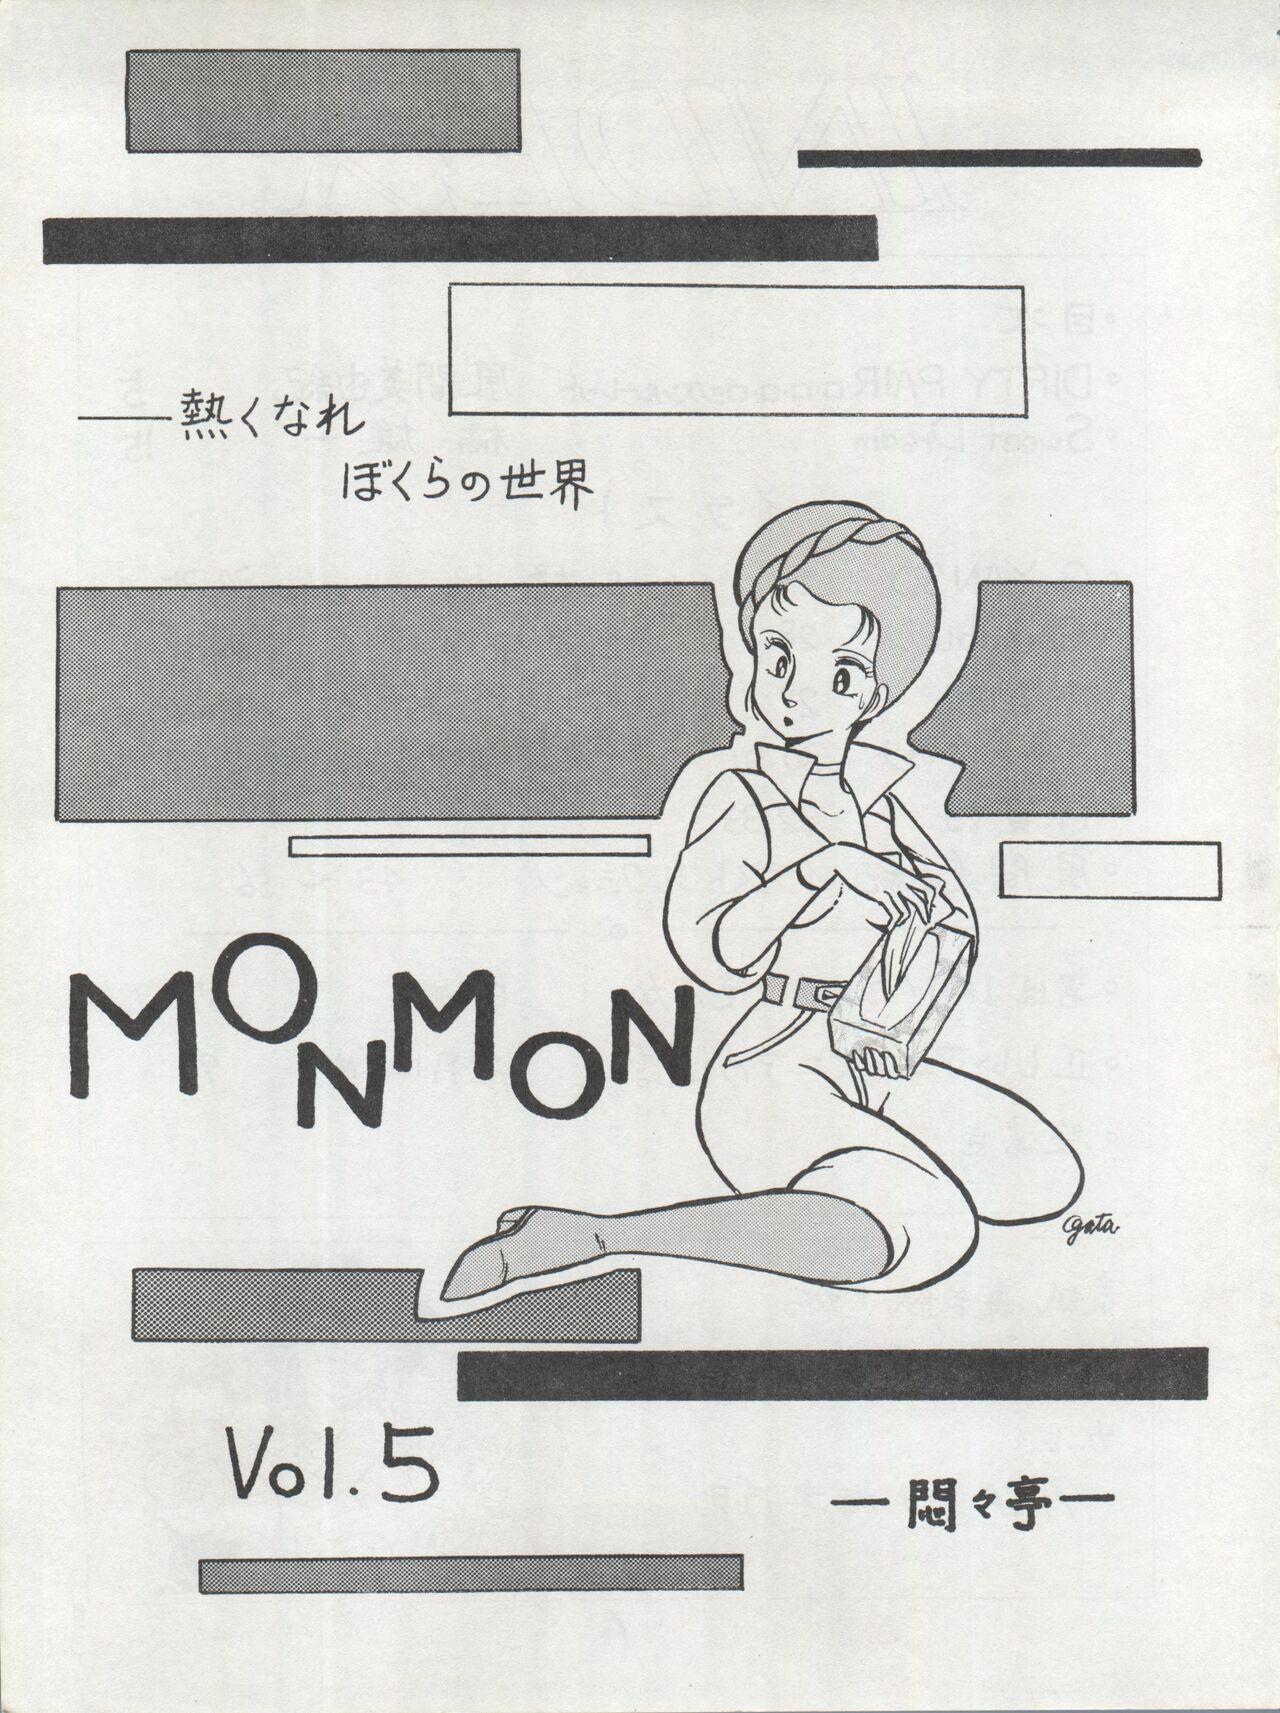 Camwhore MoN MoN Vol. 5 - Urusei yatsura Dirty pair Zeta gundam Lovers - Page 3